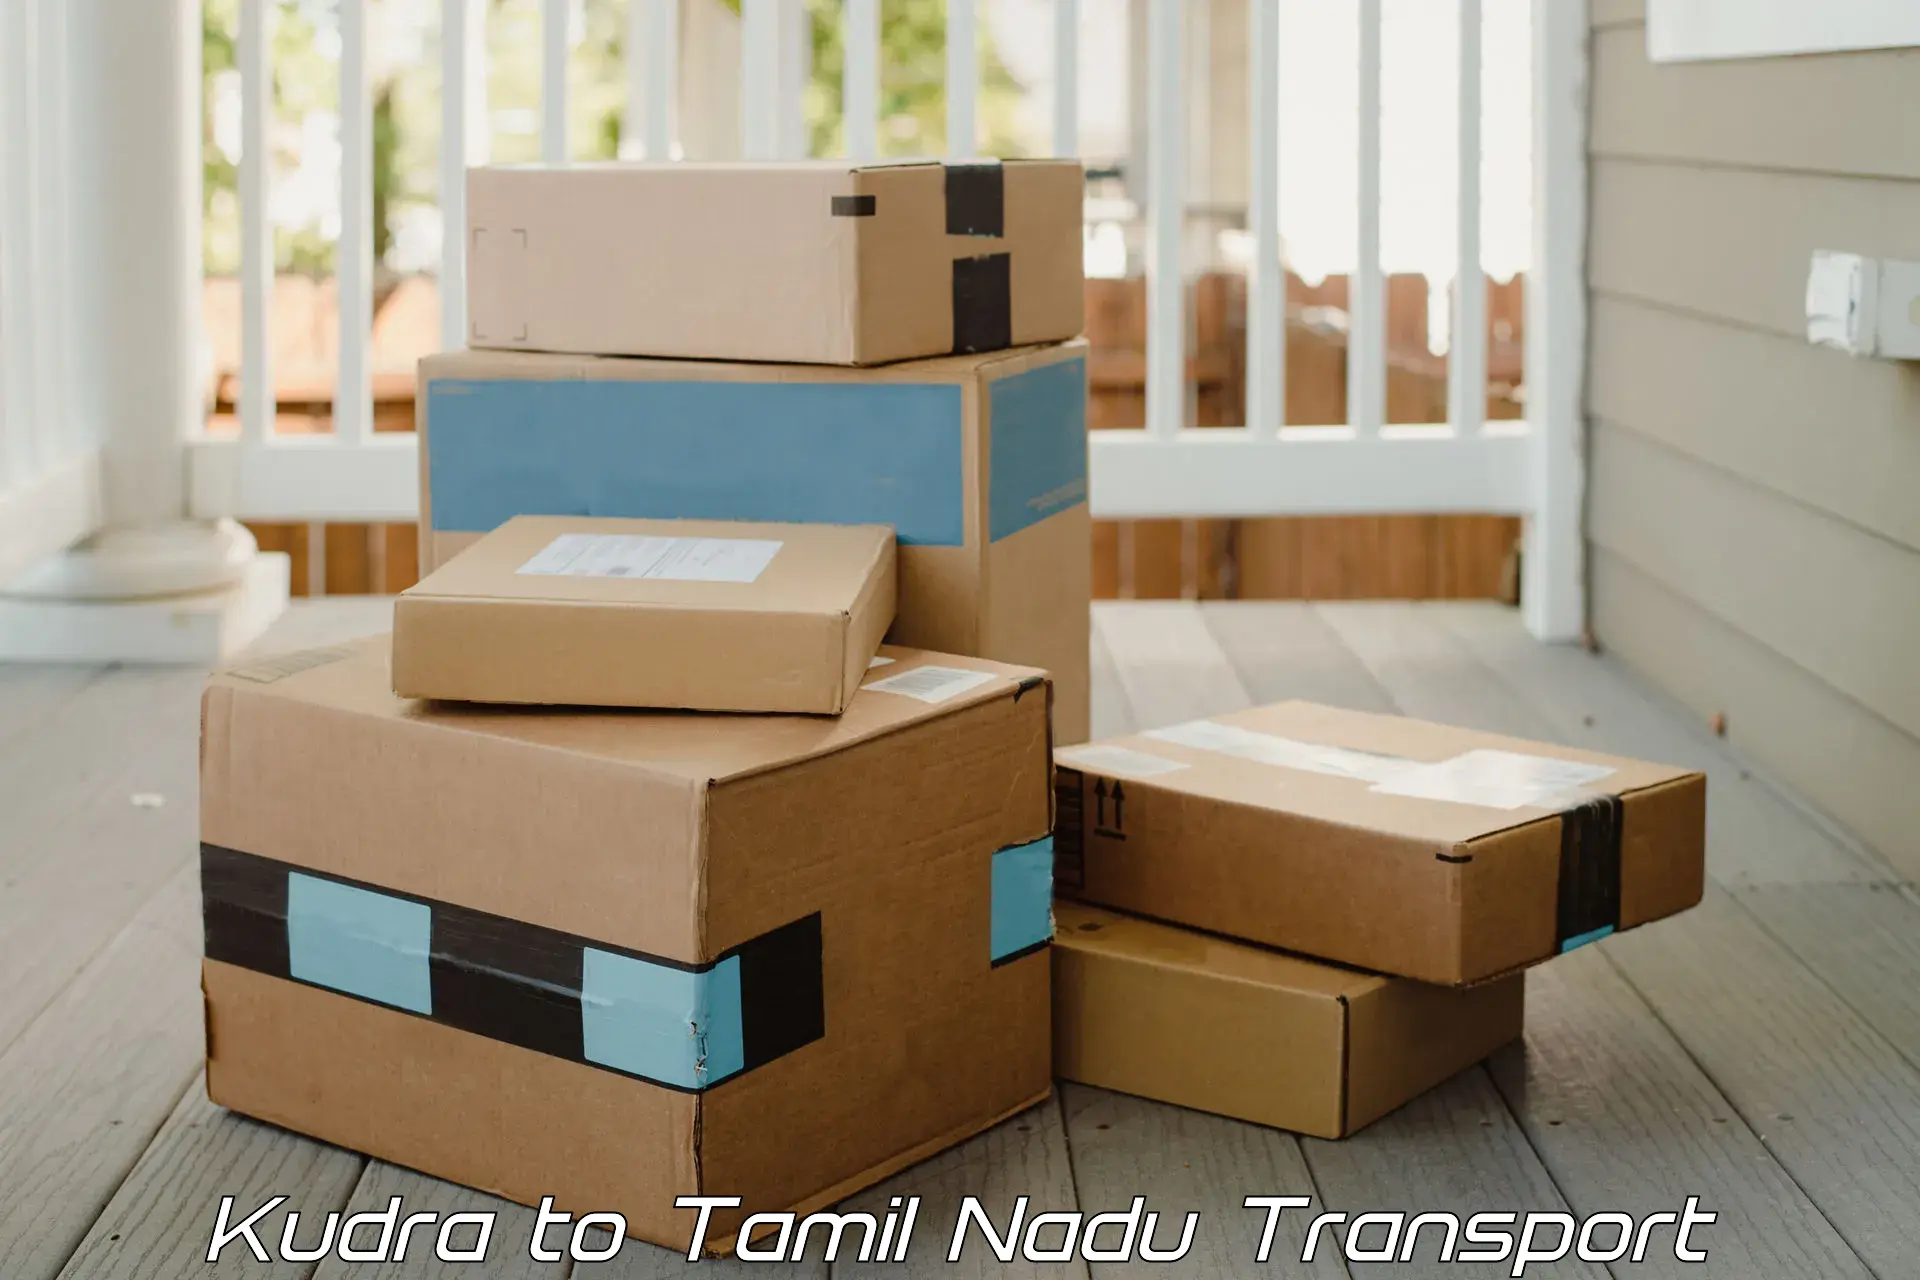 Nearest transport service Kudra to Namakkal